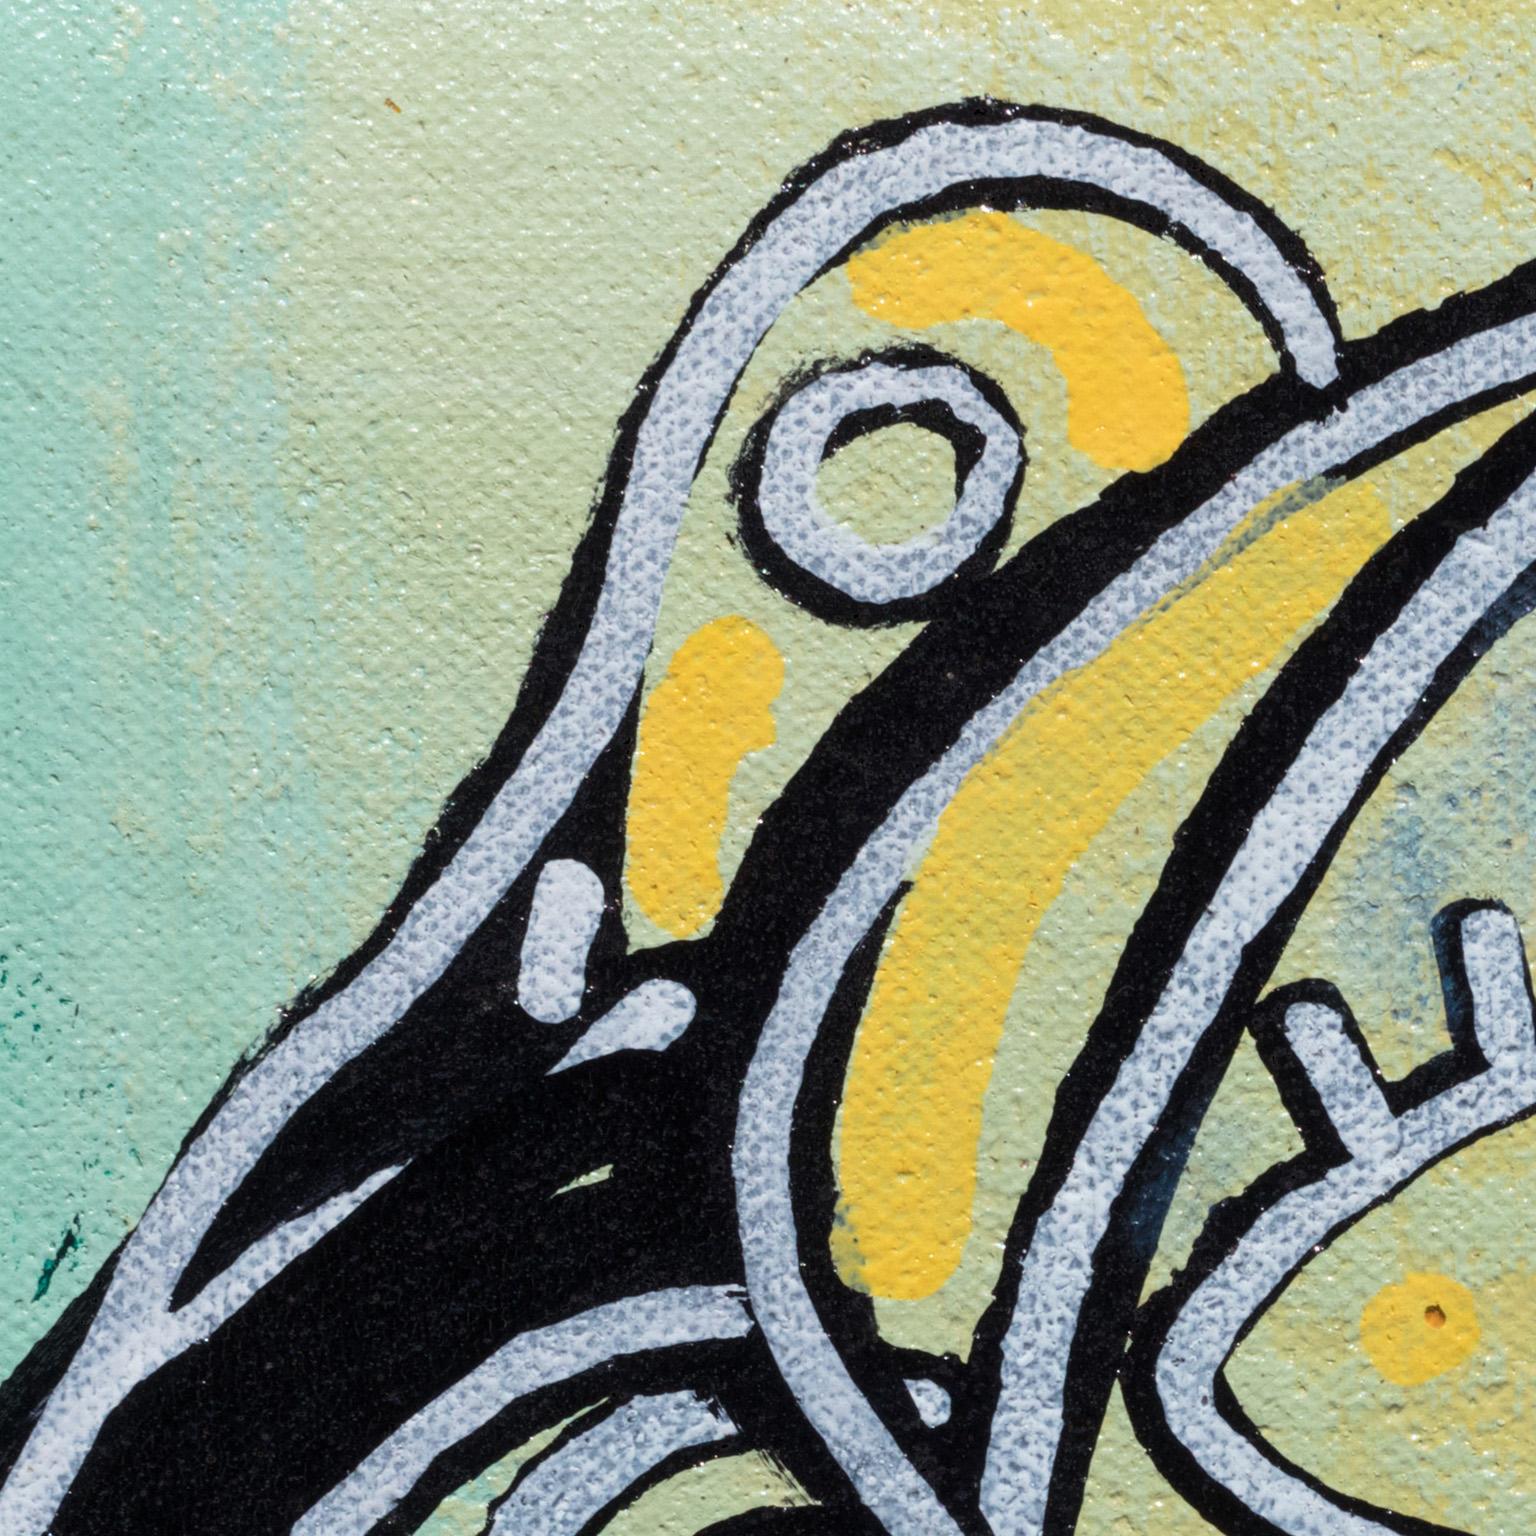 Parris Jaru's Octopus Huggs ist ein 8 x 9 Zoll großes surrealistisches Ölgemälde. Die Hauptfarben sind blau und gelb. Der Künstler schuf eine surrealistische Darstellung eines menschlichen Gesichts, das von Meerestieren bestimmt wird. Bei näherem